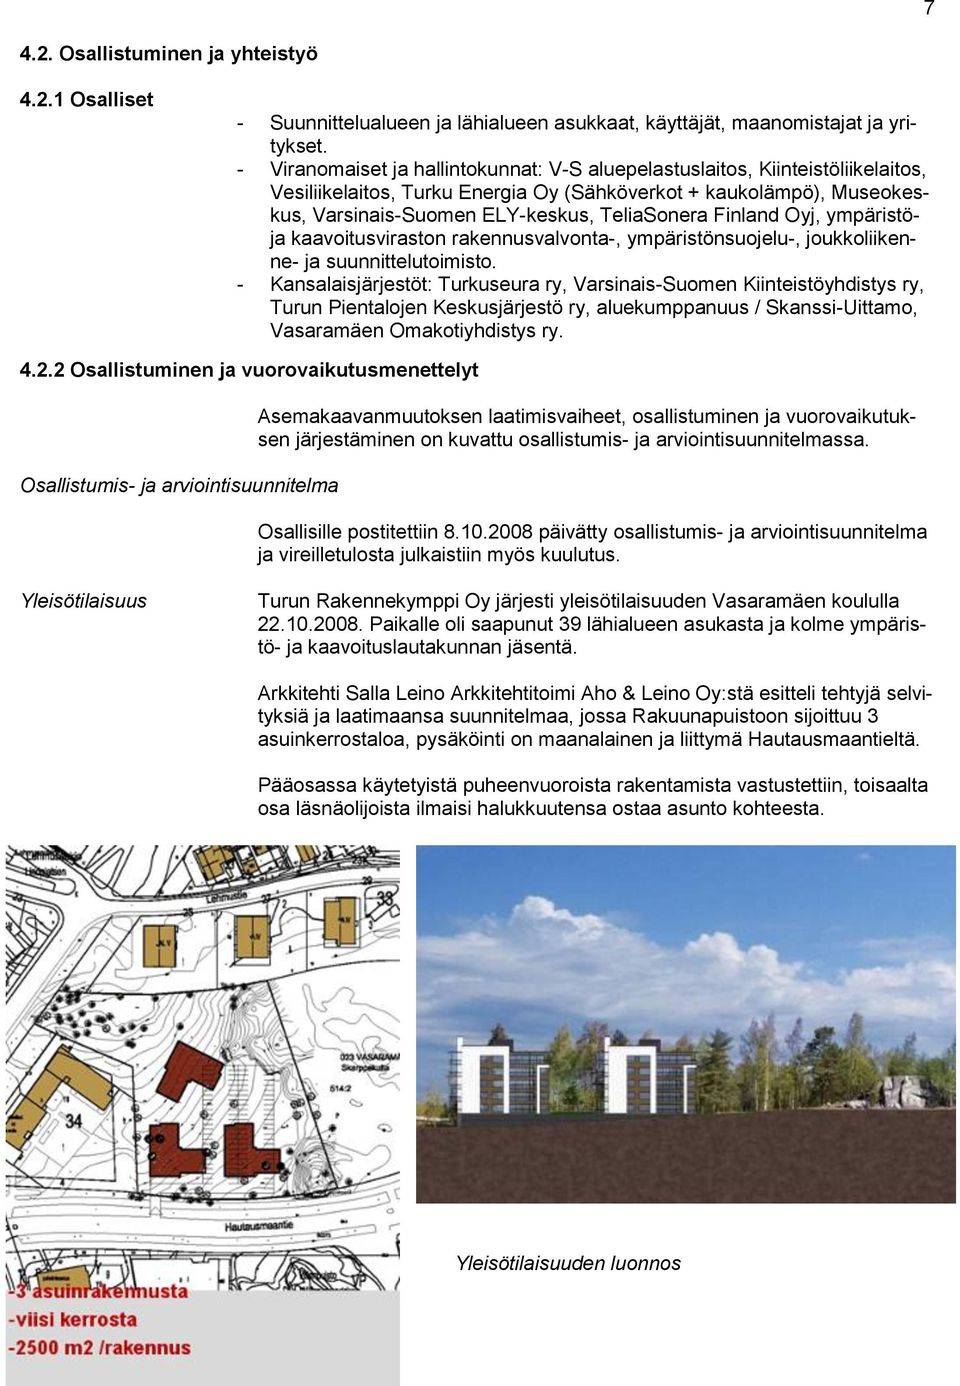 Finland Oyj, ympäristöja kaavoitusviraston rakennusvalvonta-, ympäristönsuojelu-, joukkoliikenne- ja suunnittelutoimisto.